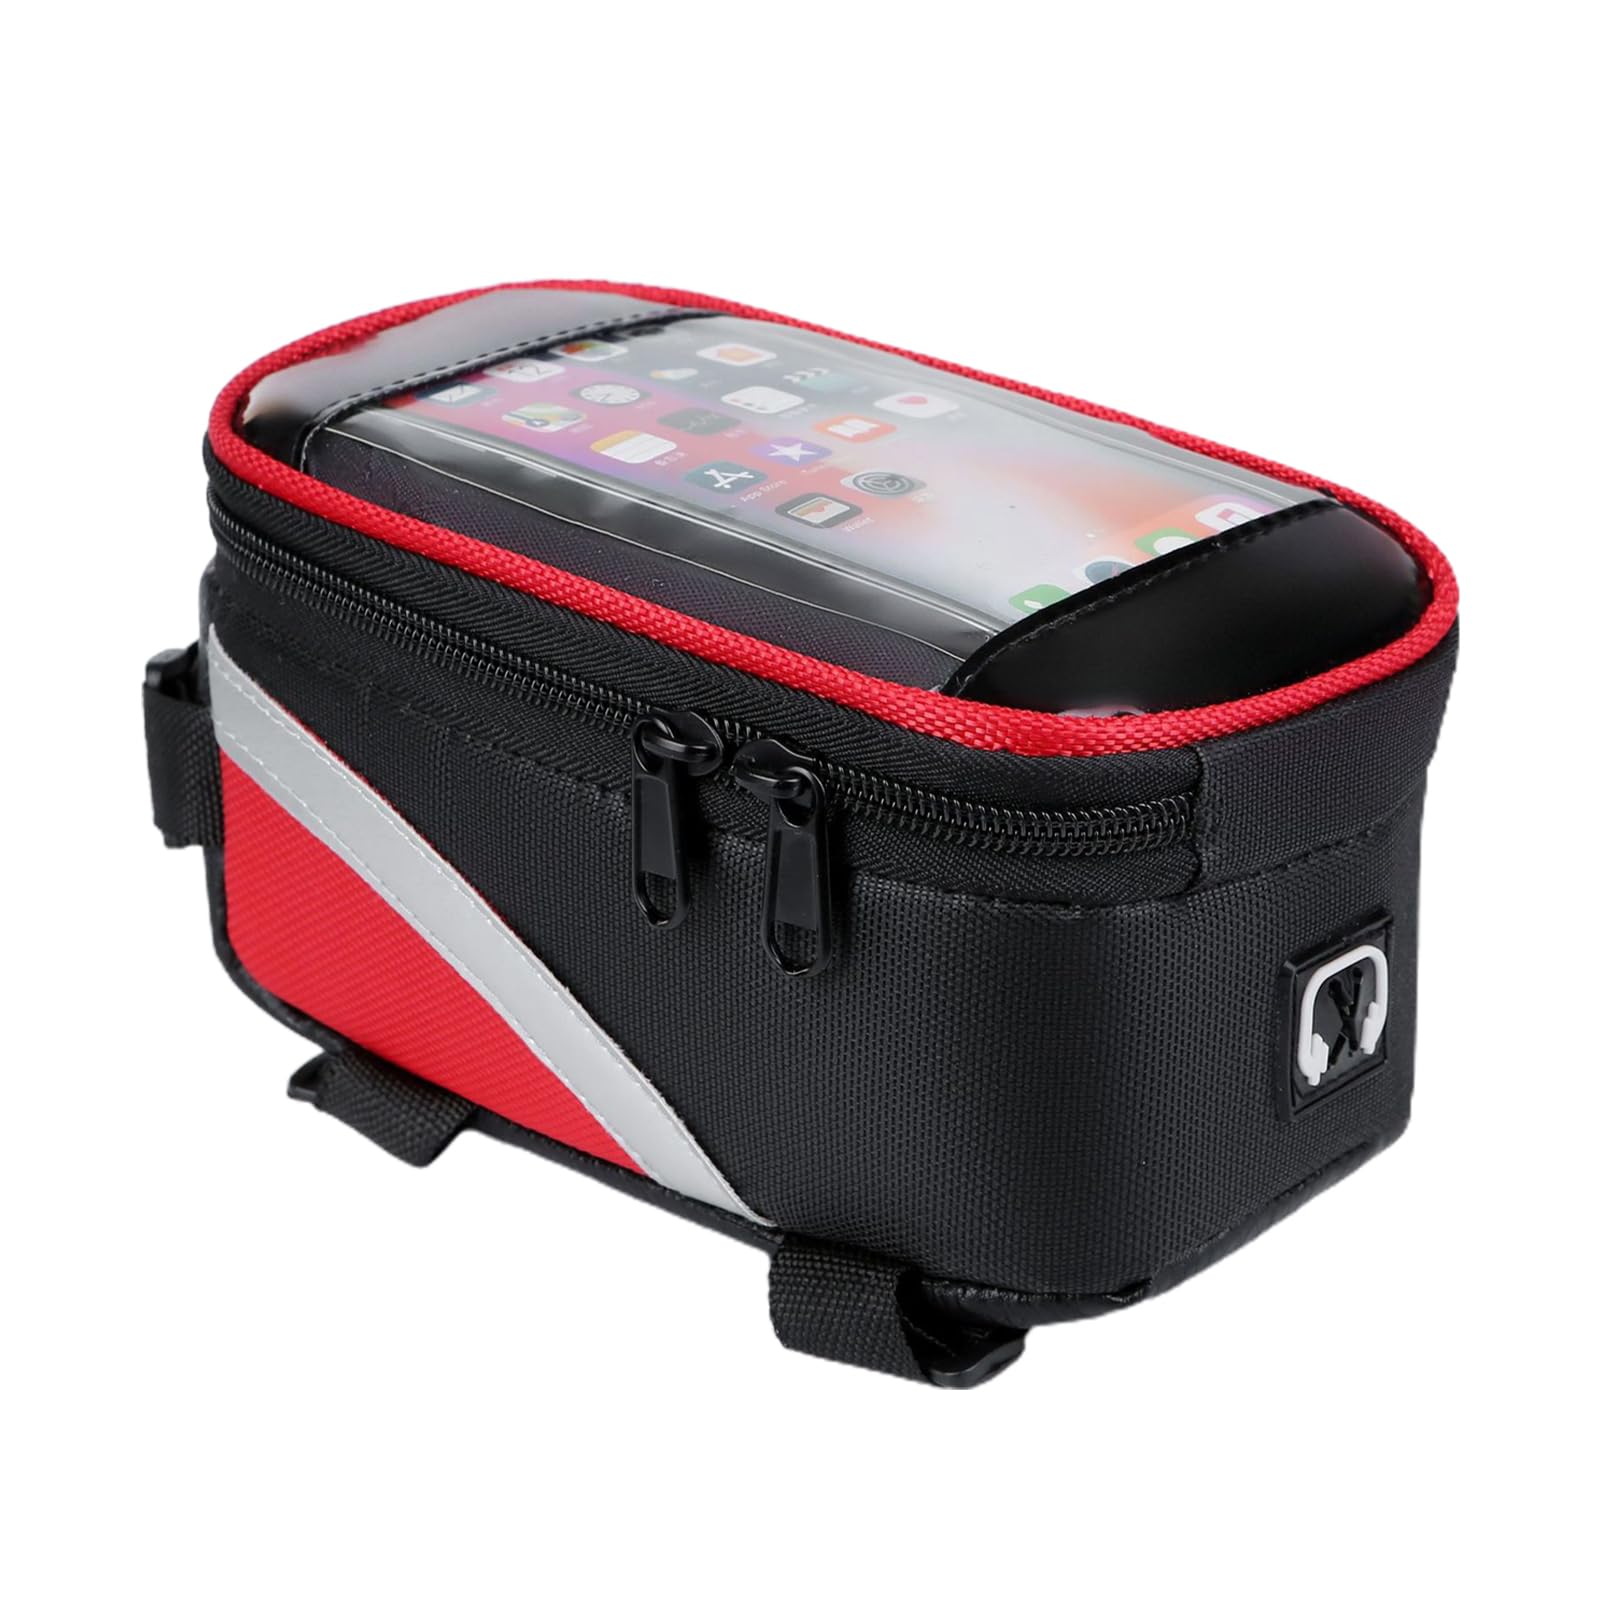 NEECS Radsporttasche, Rahmentasche, optimieren mit Premium-Fahrrad-Essenial-Tasche, leichte und kompakte Rahmentasche, Langstreckenradfahrer, ideal für Werkzeuge, Telefon und Energie von NEECS